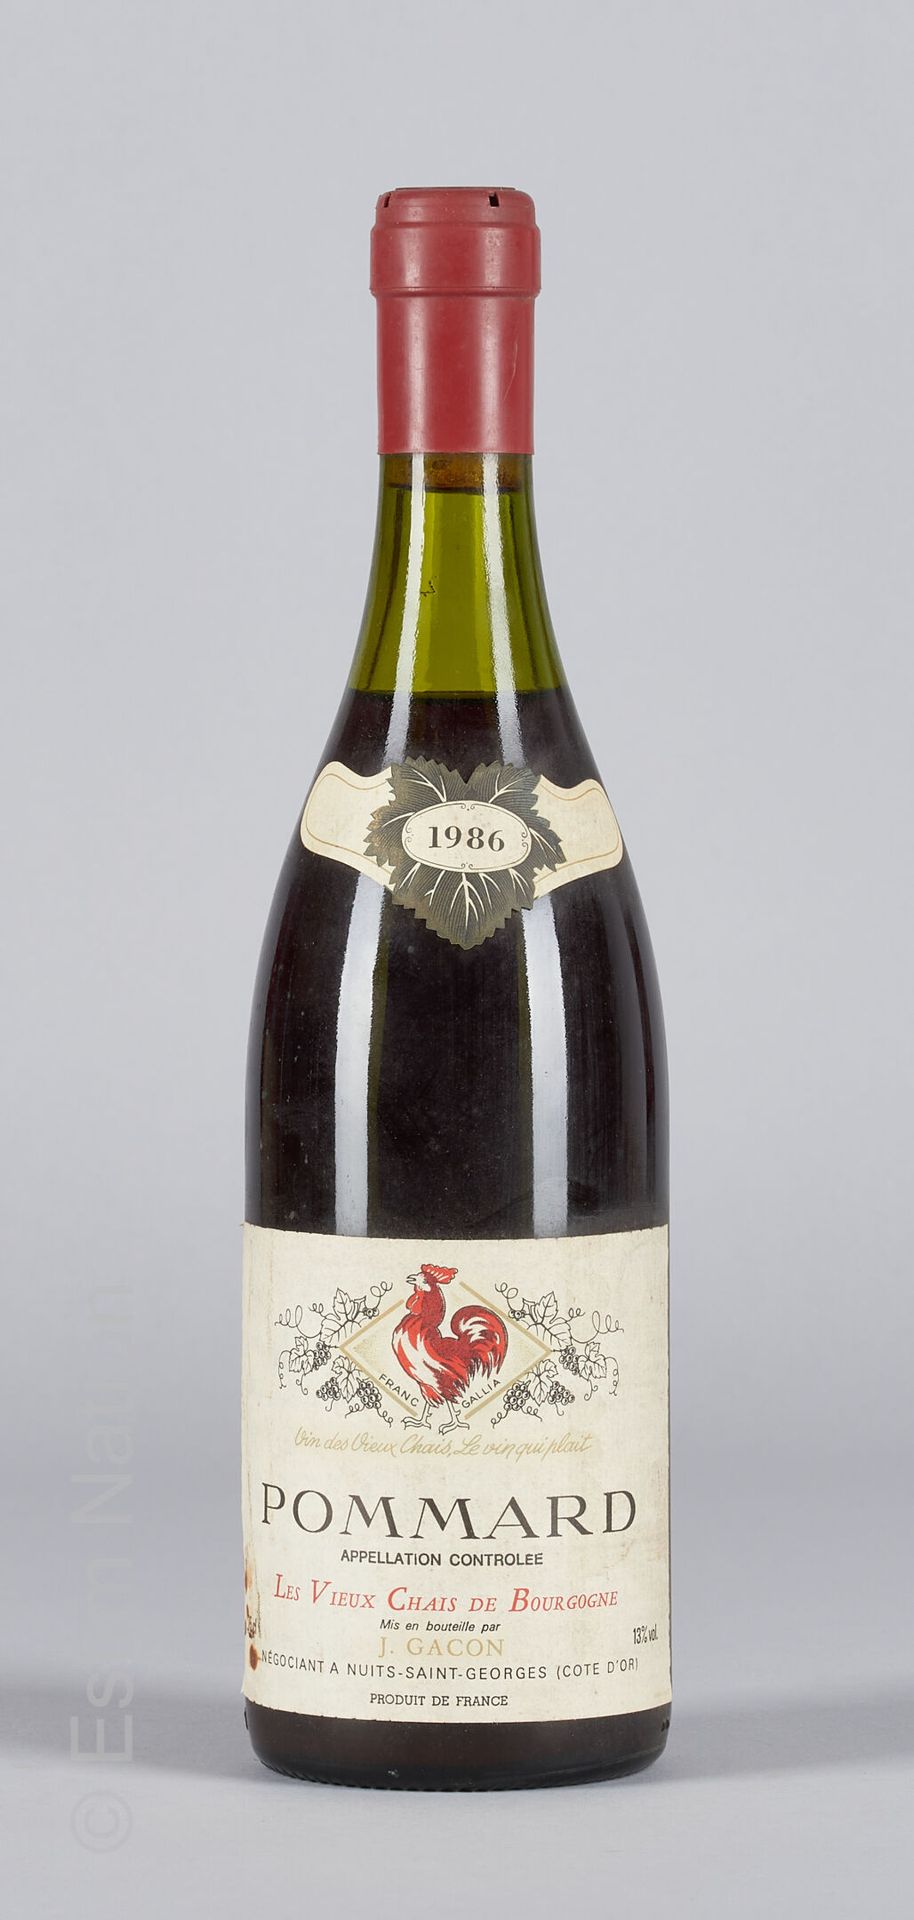 BOURGOGNE 1 Flasche Pommard 1986 Les vieux chais de Bourgogne J. Gacon.

(N. Zwi&hellip;